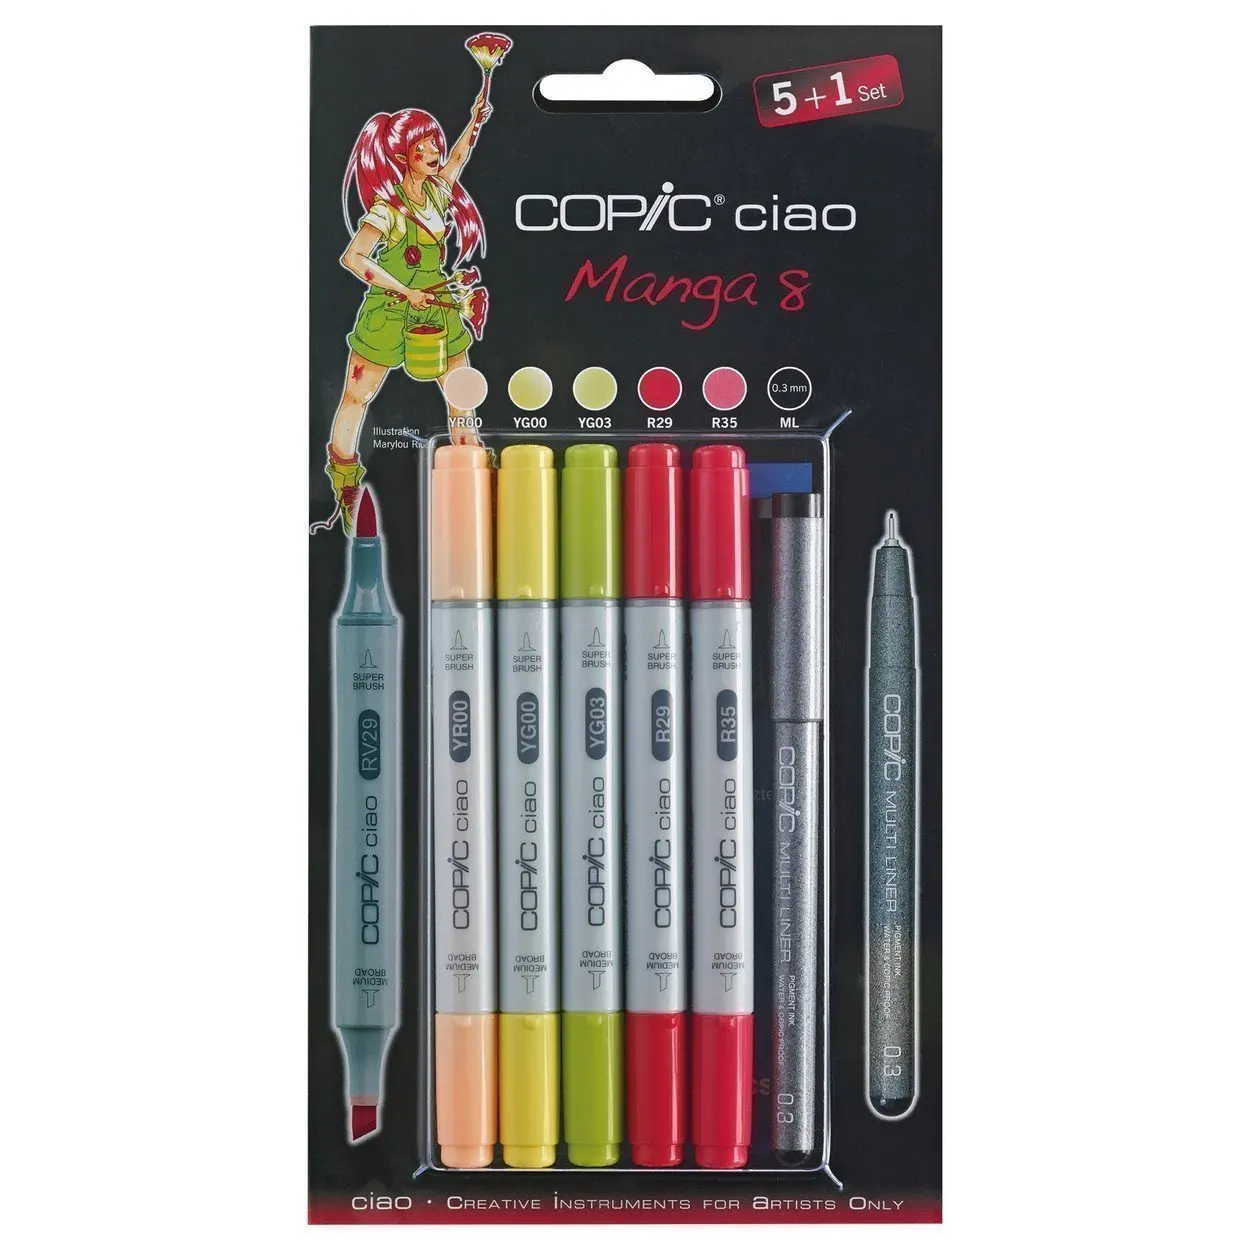 Набор маркеров на спиртовой основе Copic Ciao манга 8 5 цветов мультилинер 0.3мм |